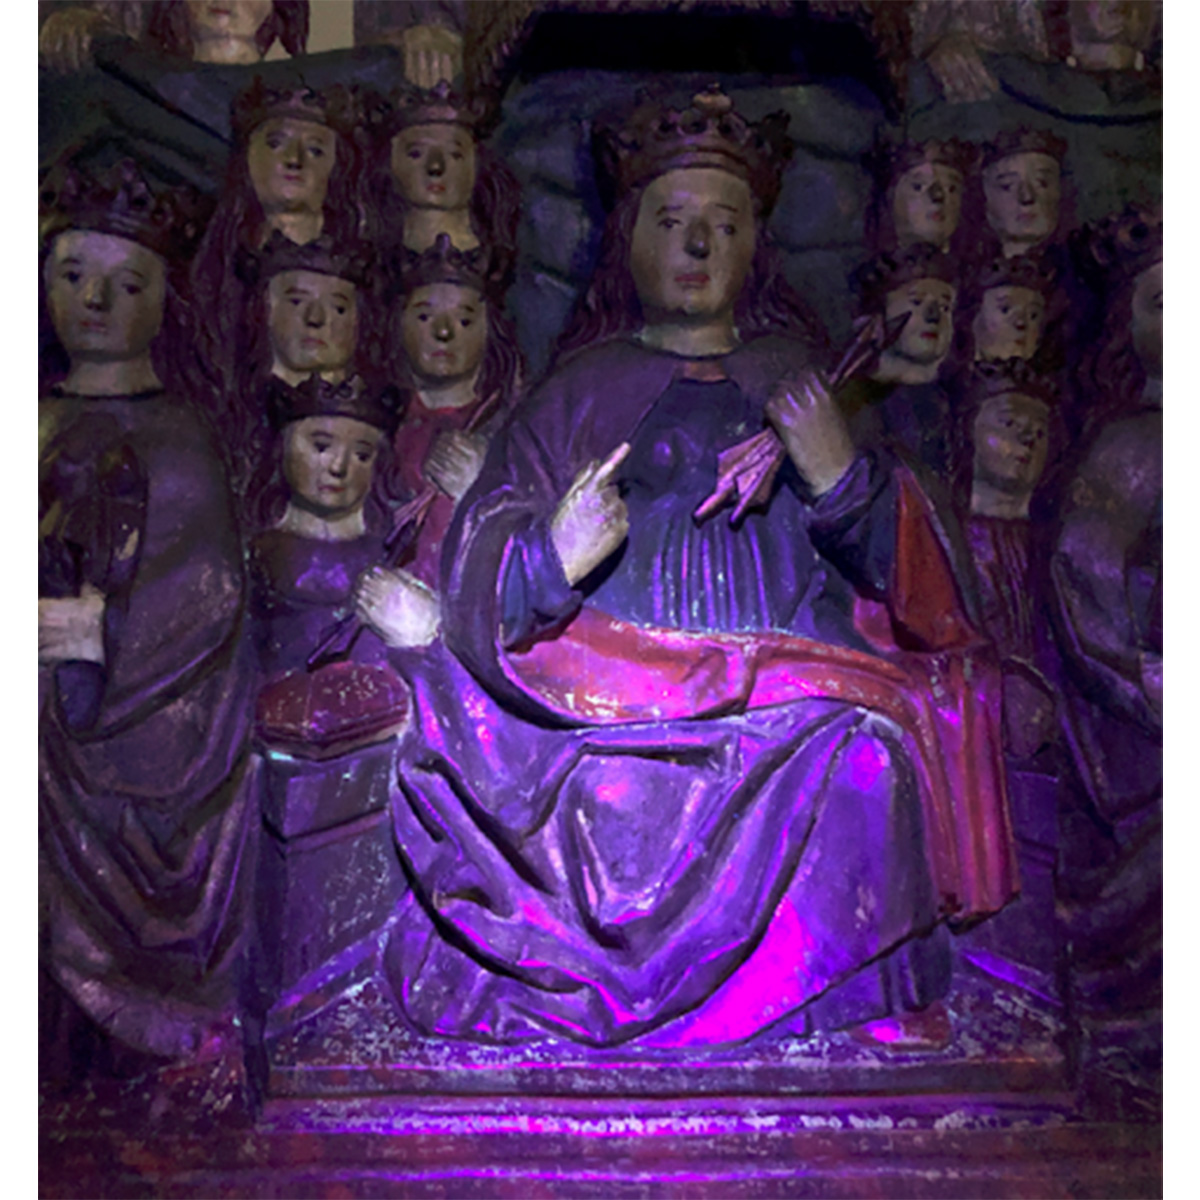 Image of a wooden sculpture under ultraviolet light